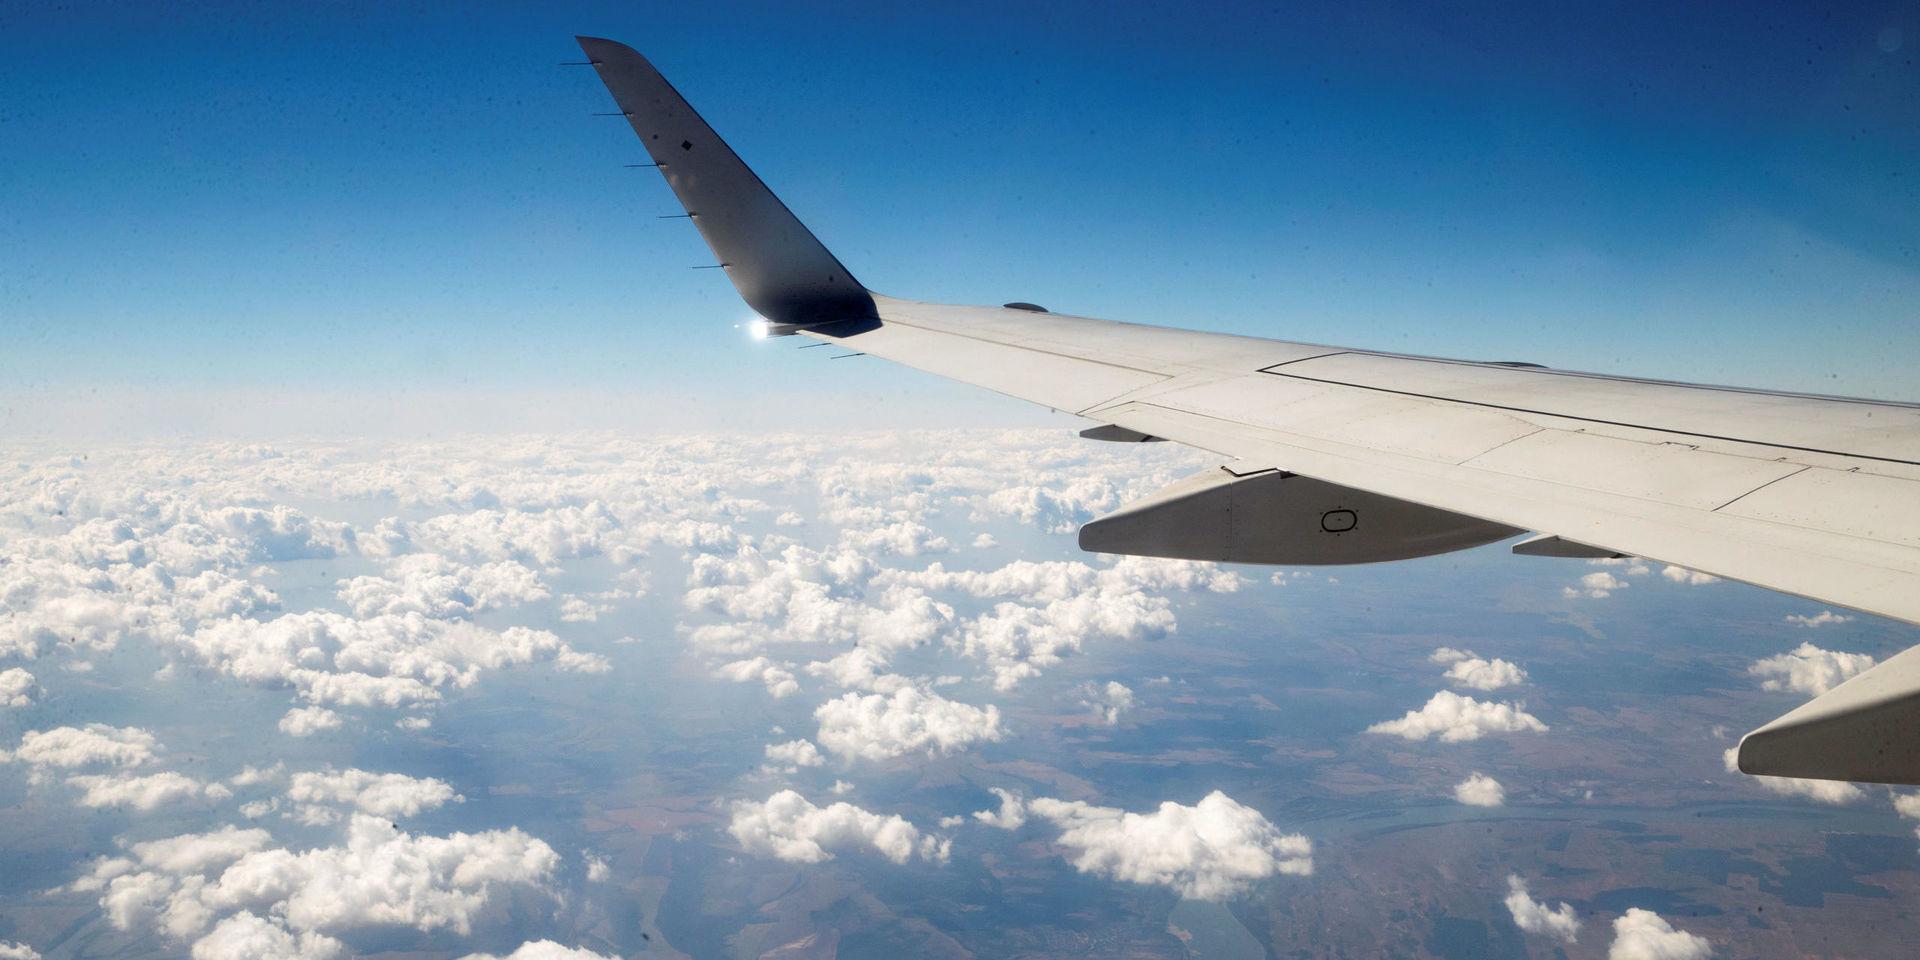 Klimatpåverkan. Förbrukningen av flygbränsle ökar trots effektiviseringar.